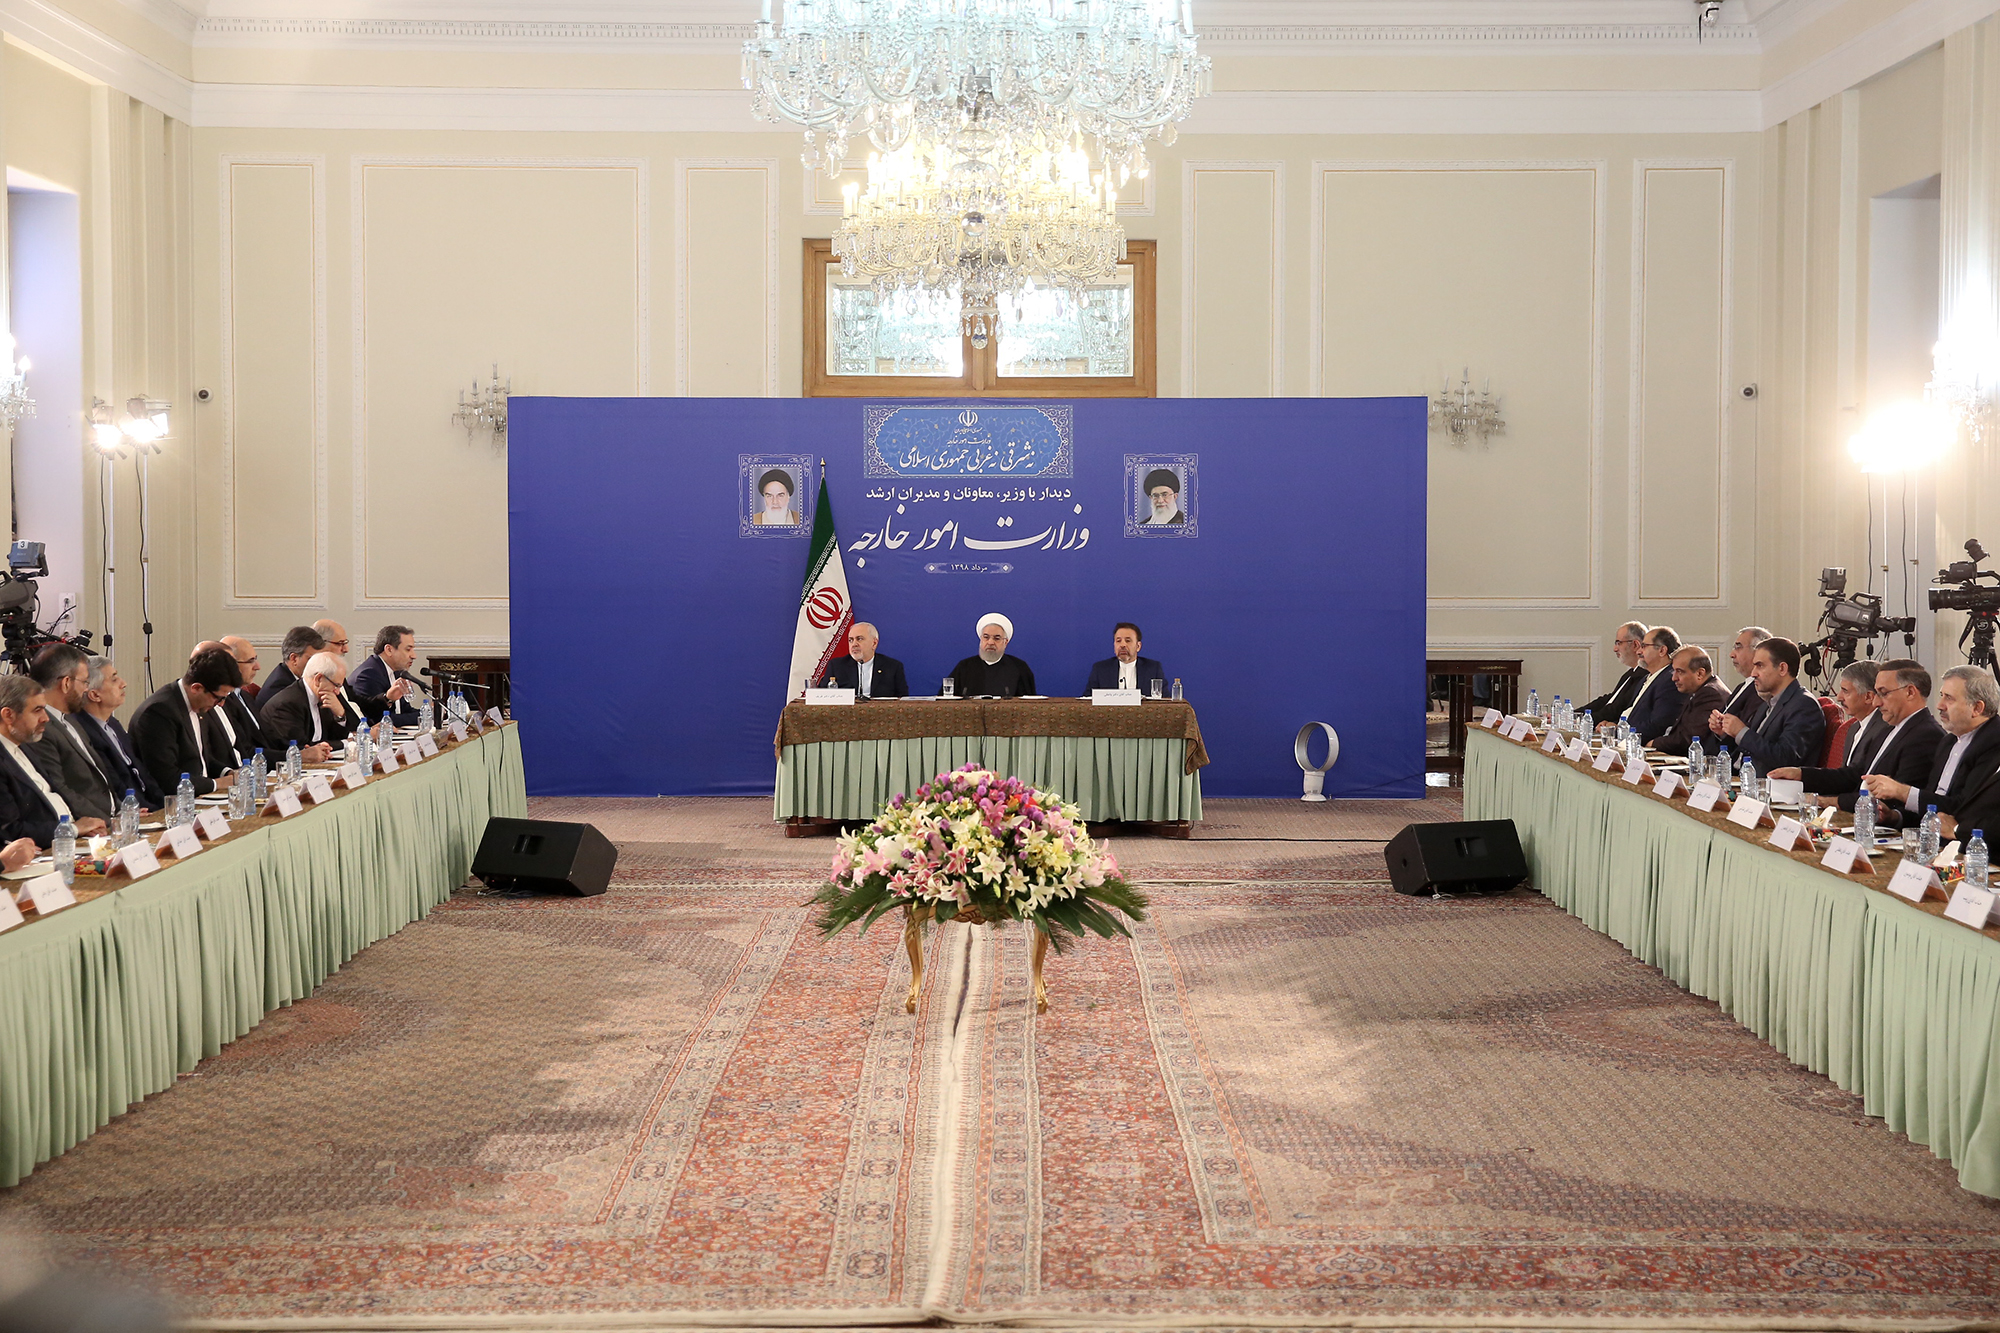 روحانی: ظریف نخبه و مجتهد سیاسی است/ سیاست خارجه مربوط به کل ملت ایران است نه یک گروه و جناح 